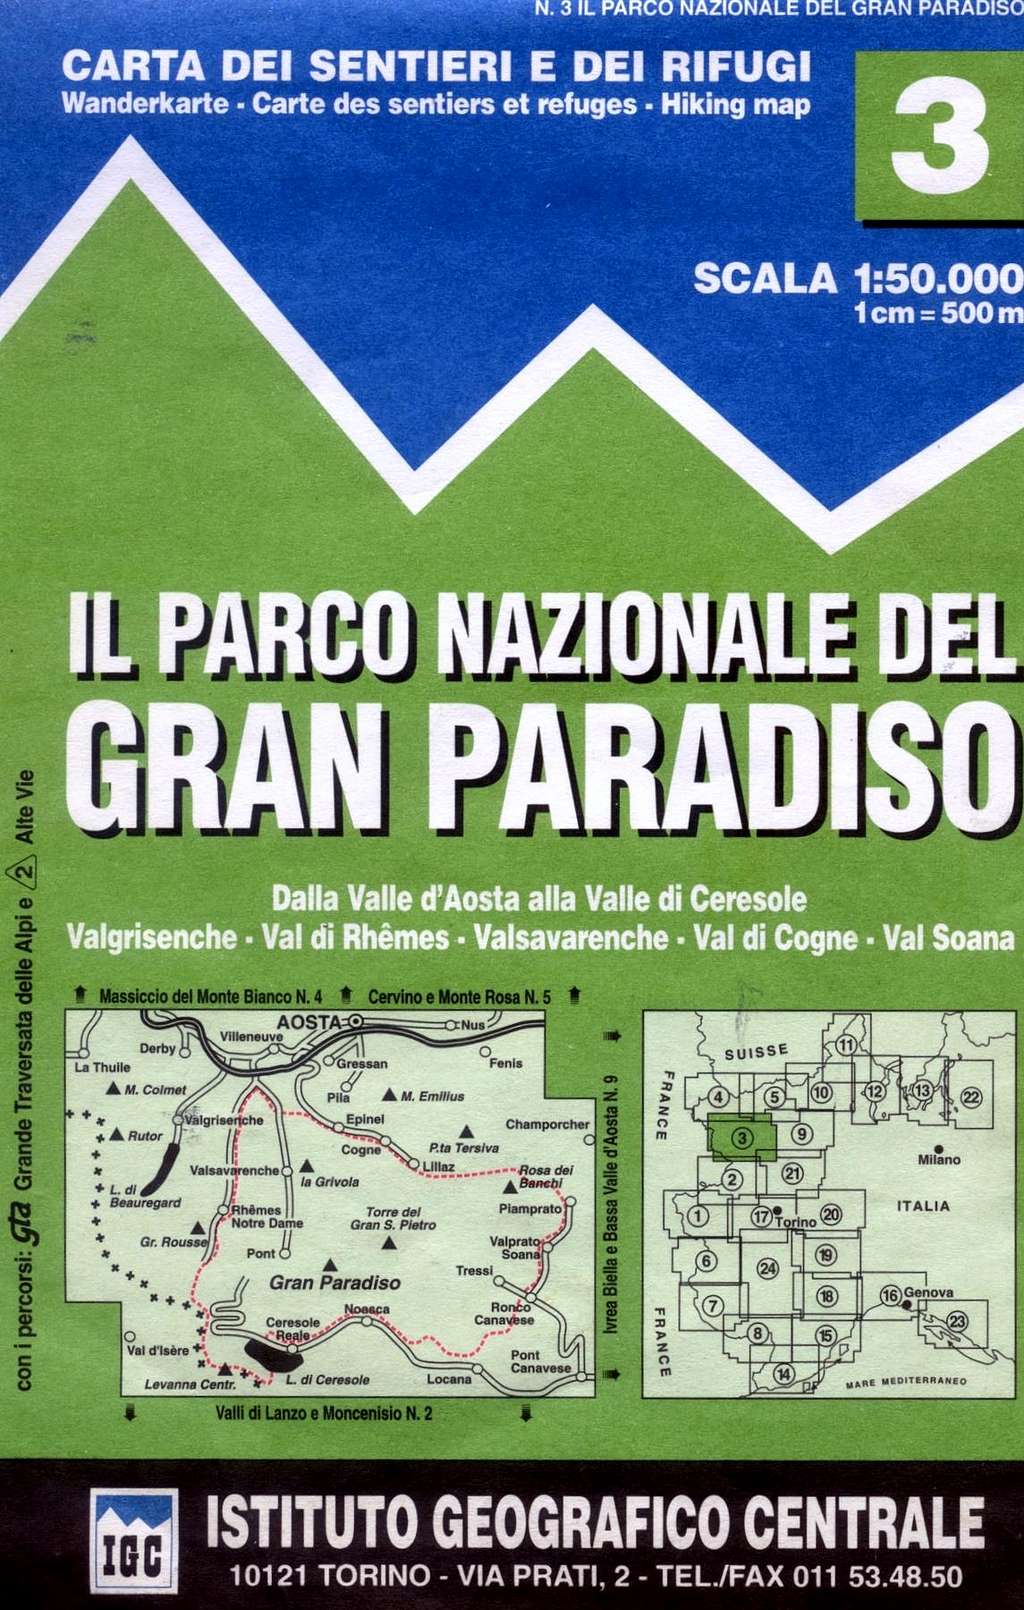 Gran Paradiso map 1:50.000